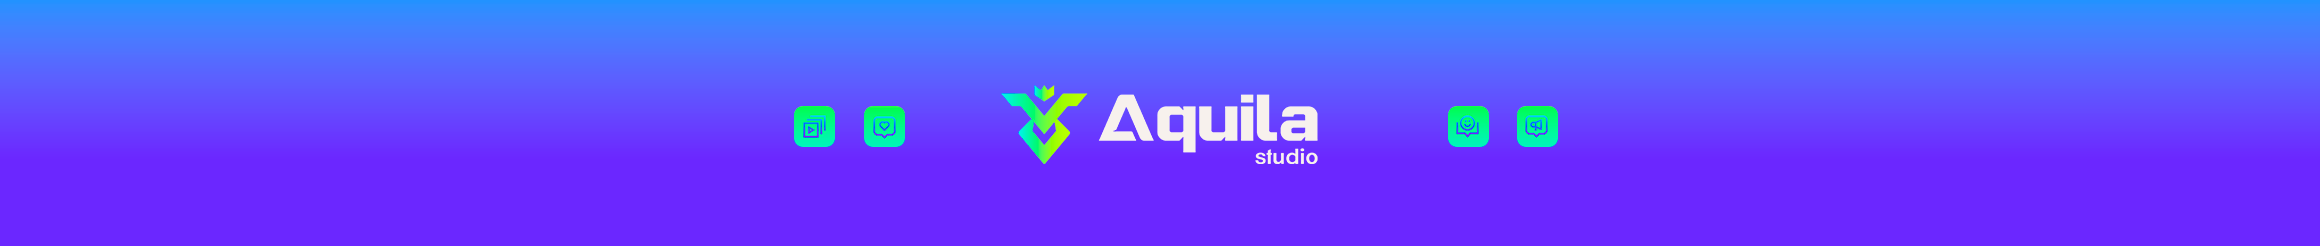 Banner de perfil de Agência Aquila